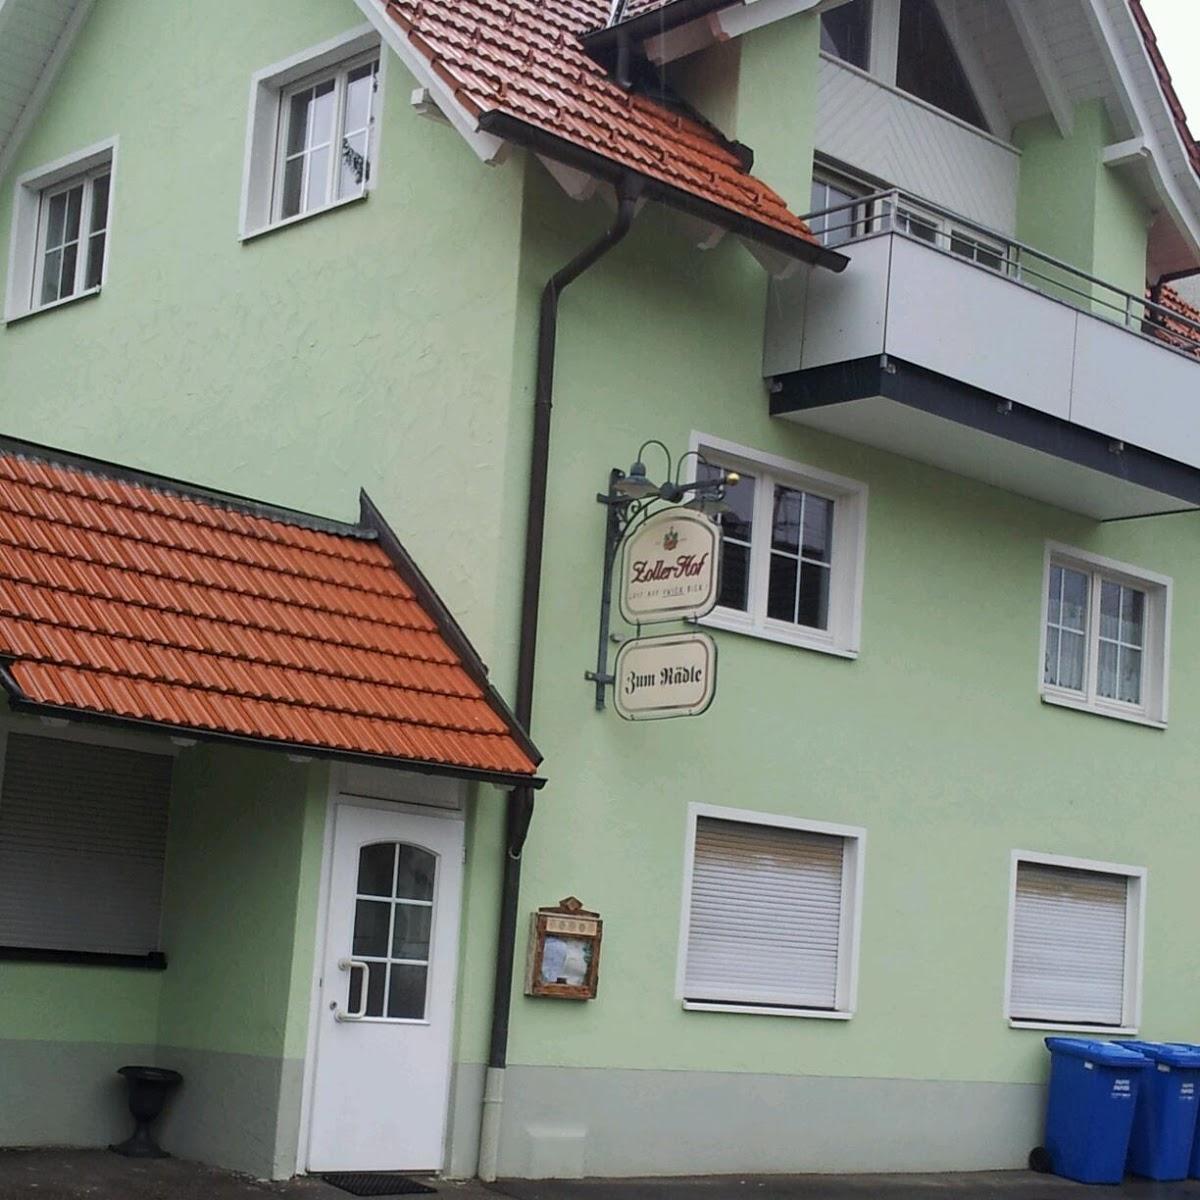 Restaurant "Gasthaus Zum Rädle" in  Neufra